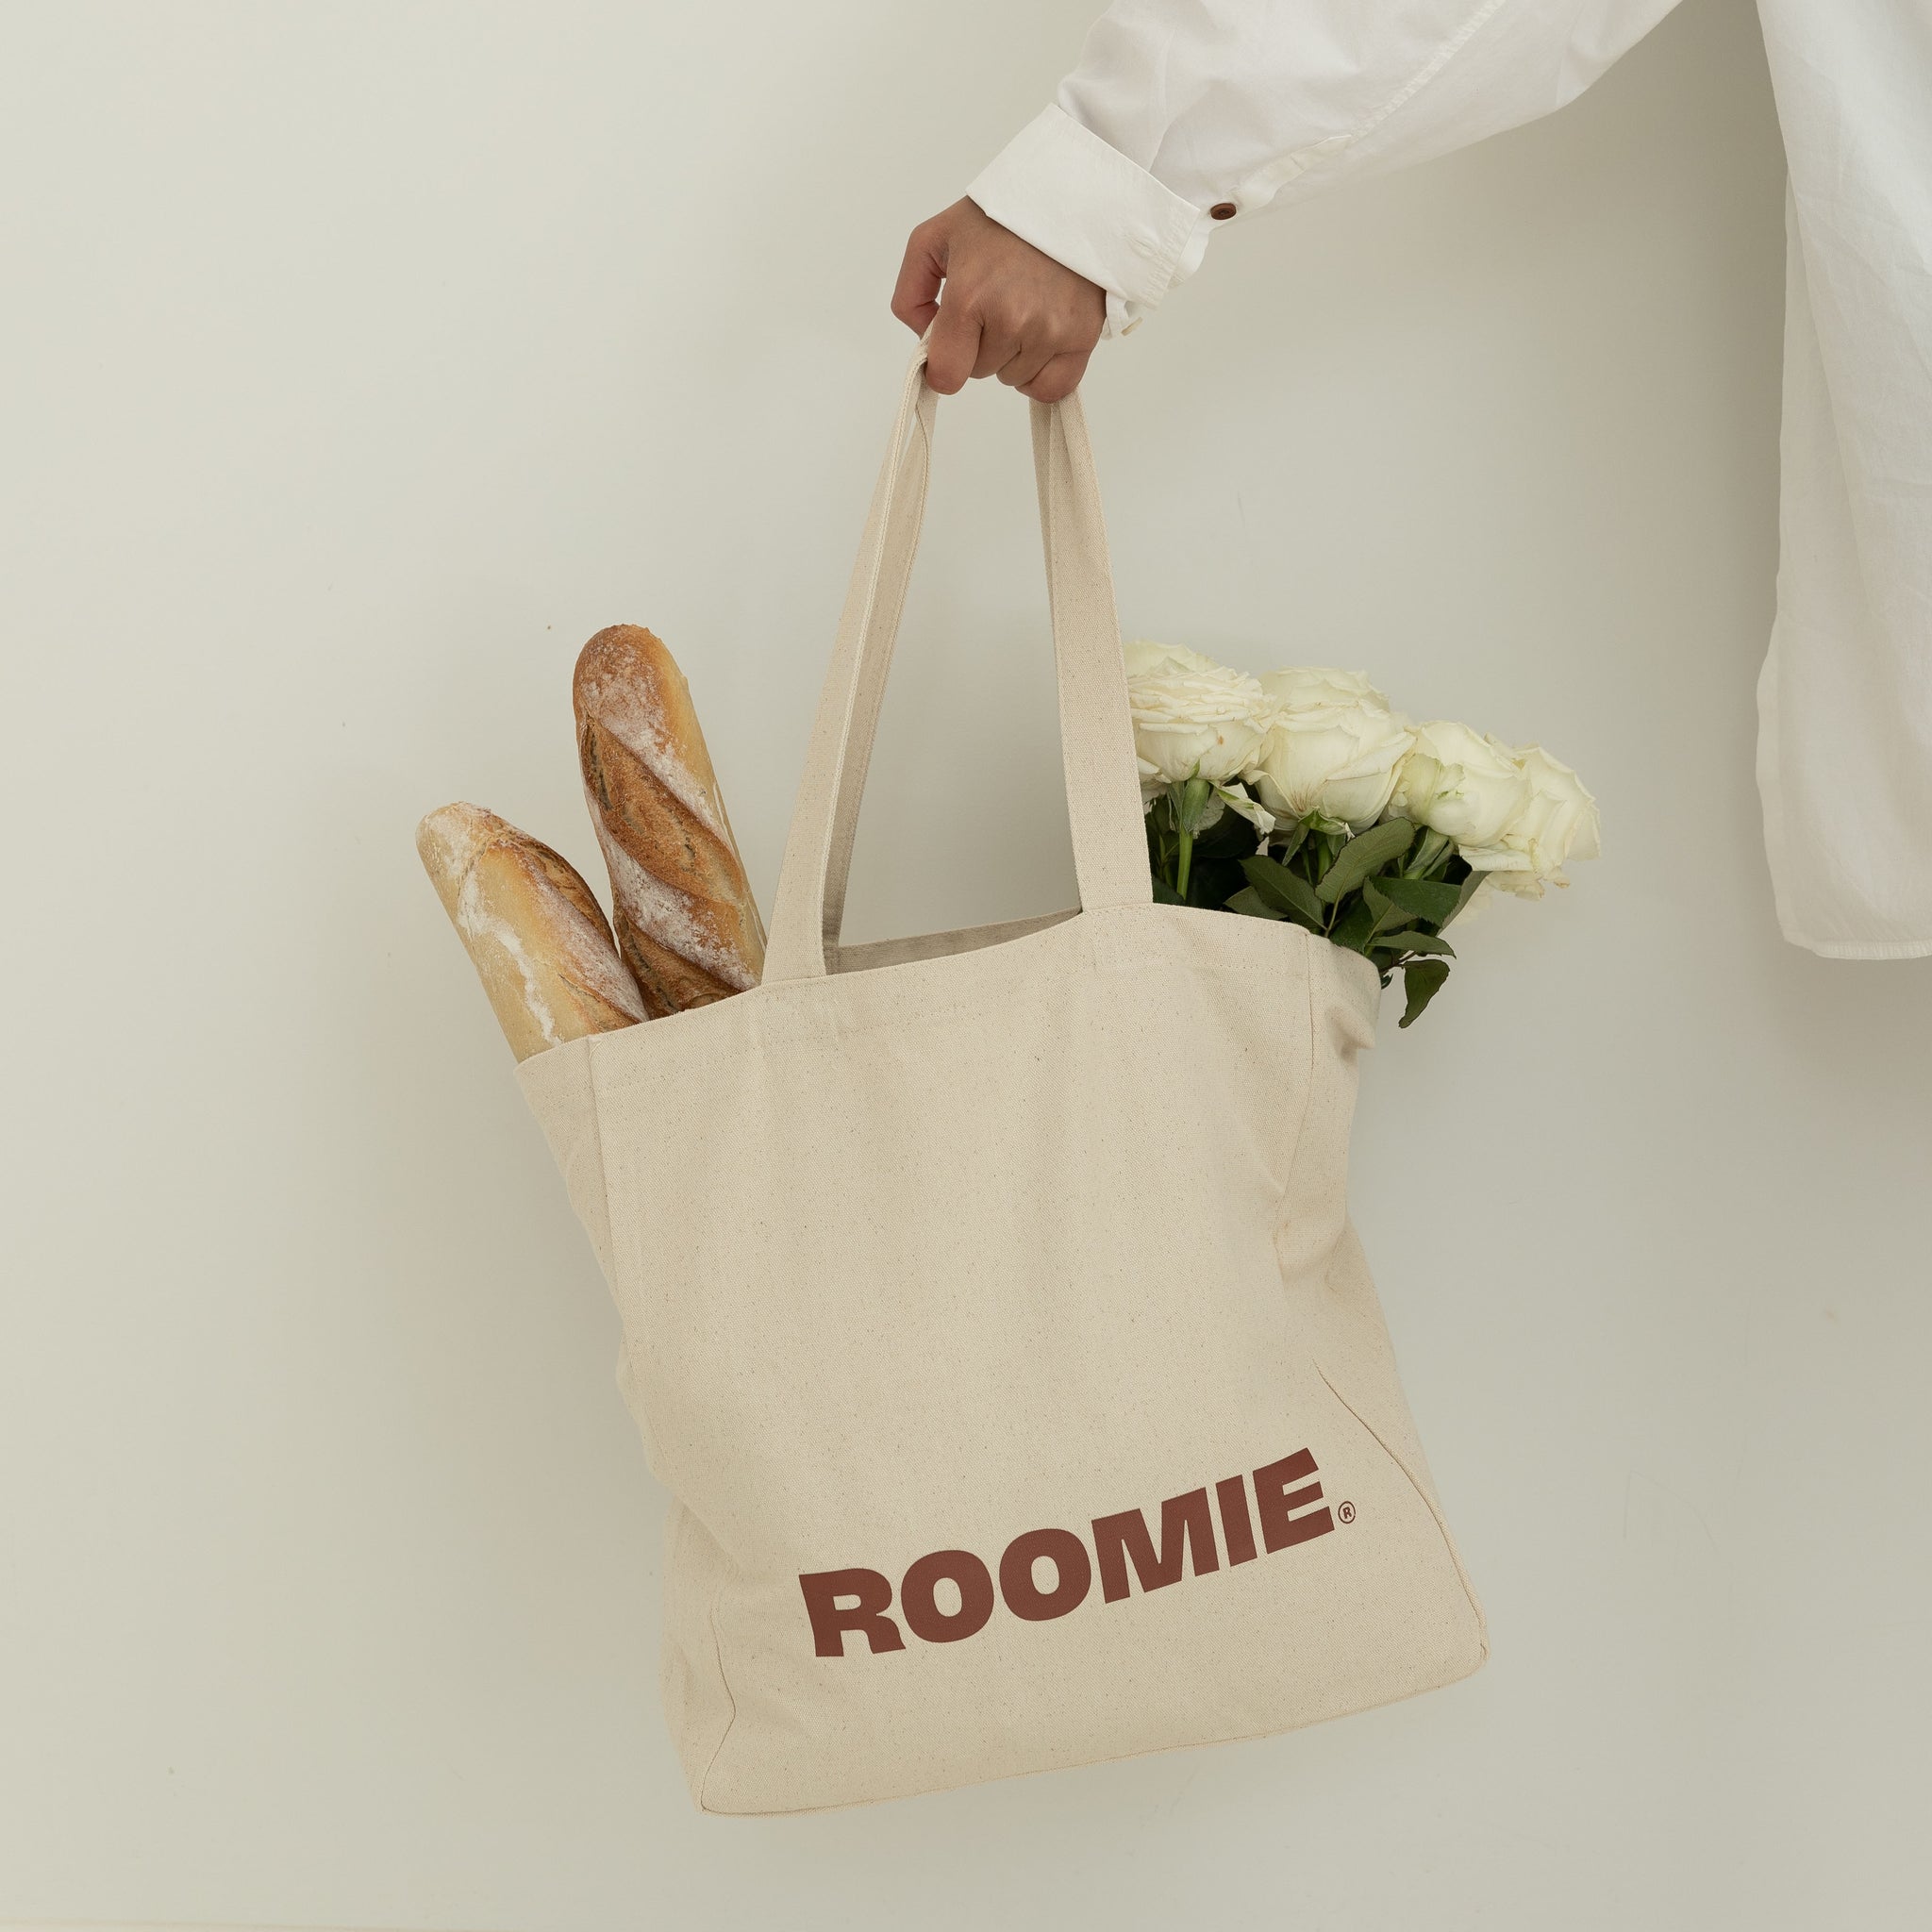 Roomie Tote Bag